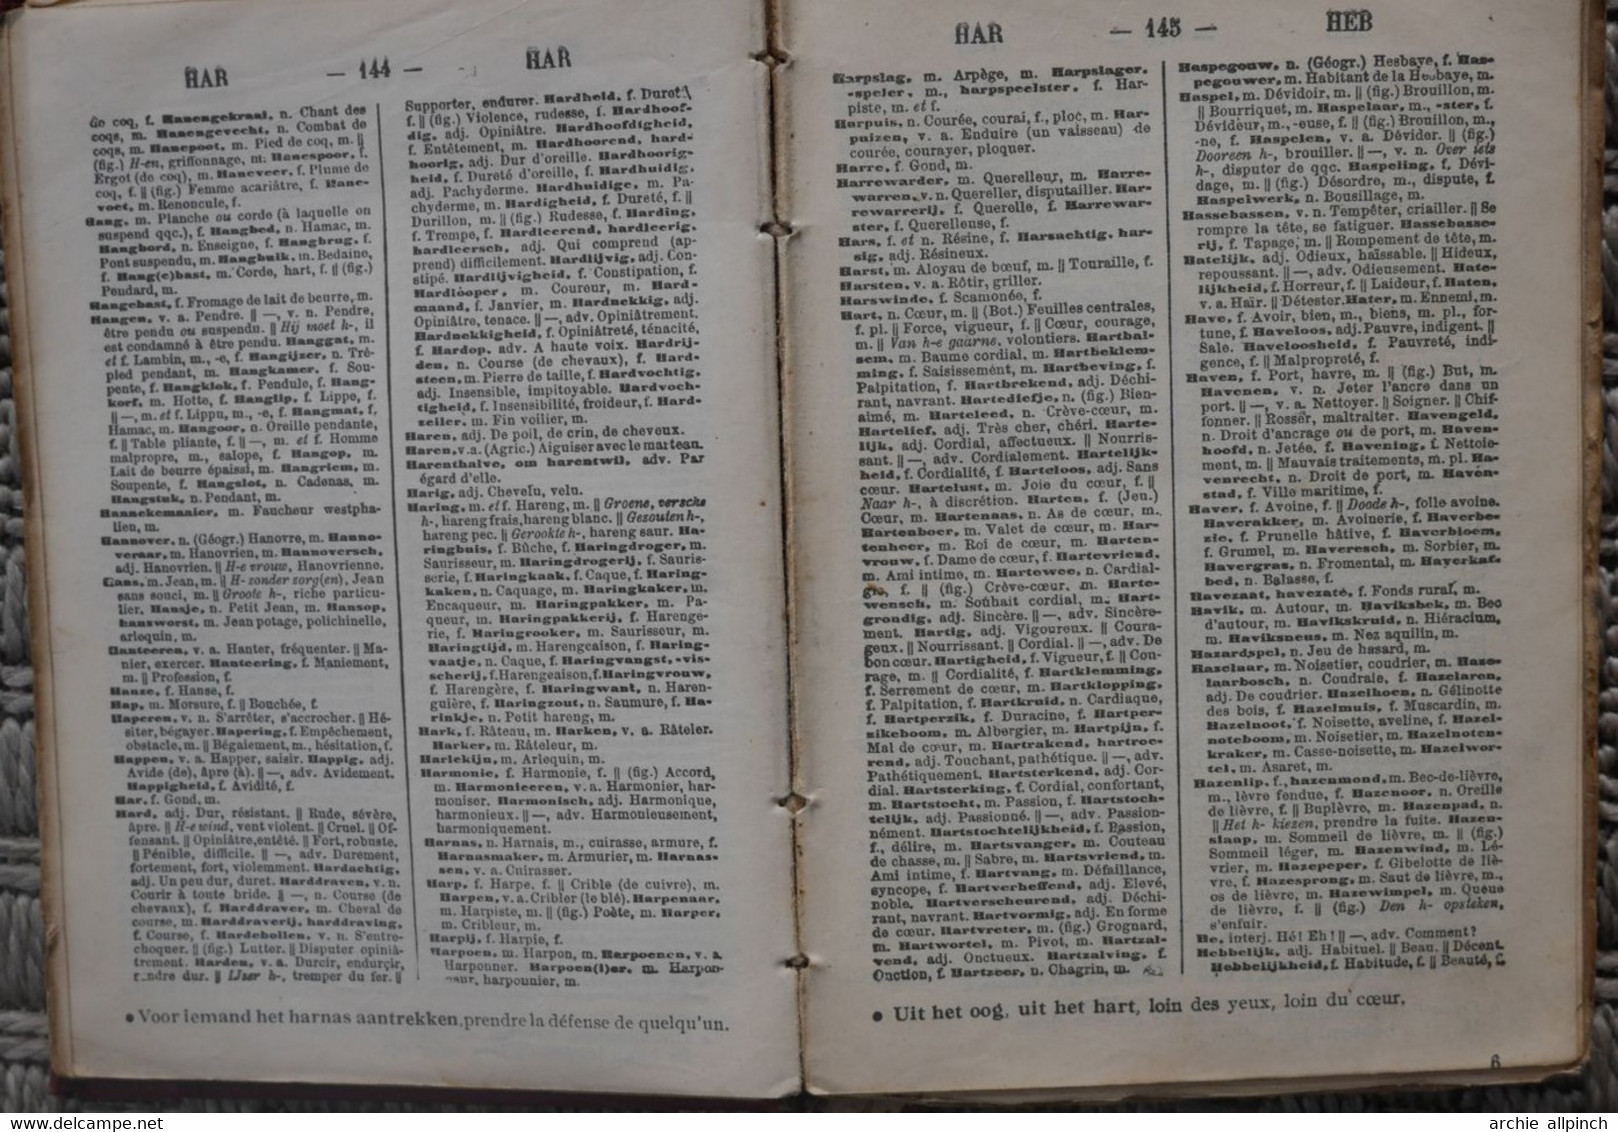 Dictionnaire Callewaert's français - néerlandais +/- 1940